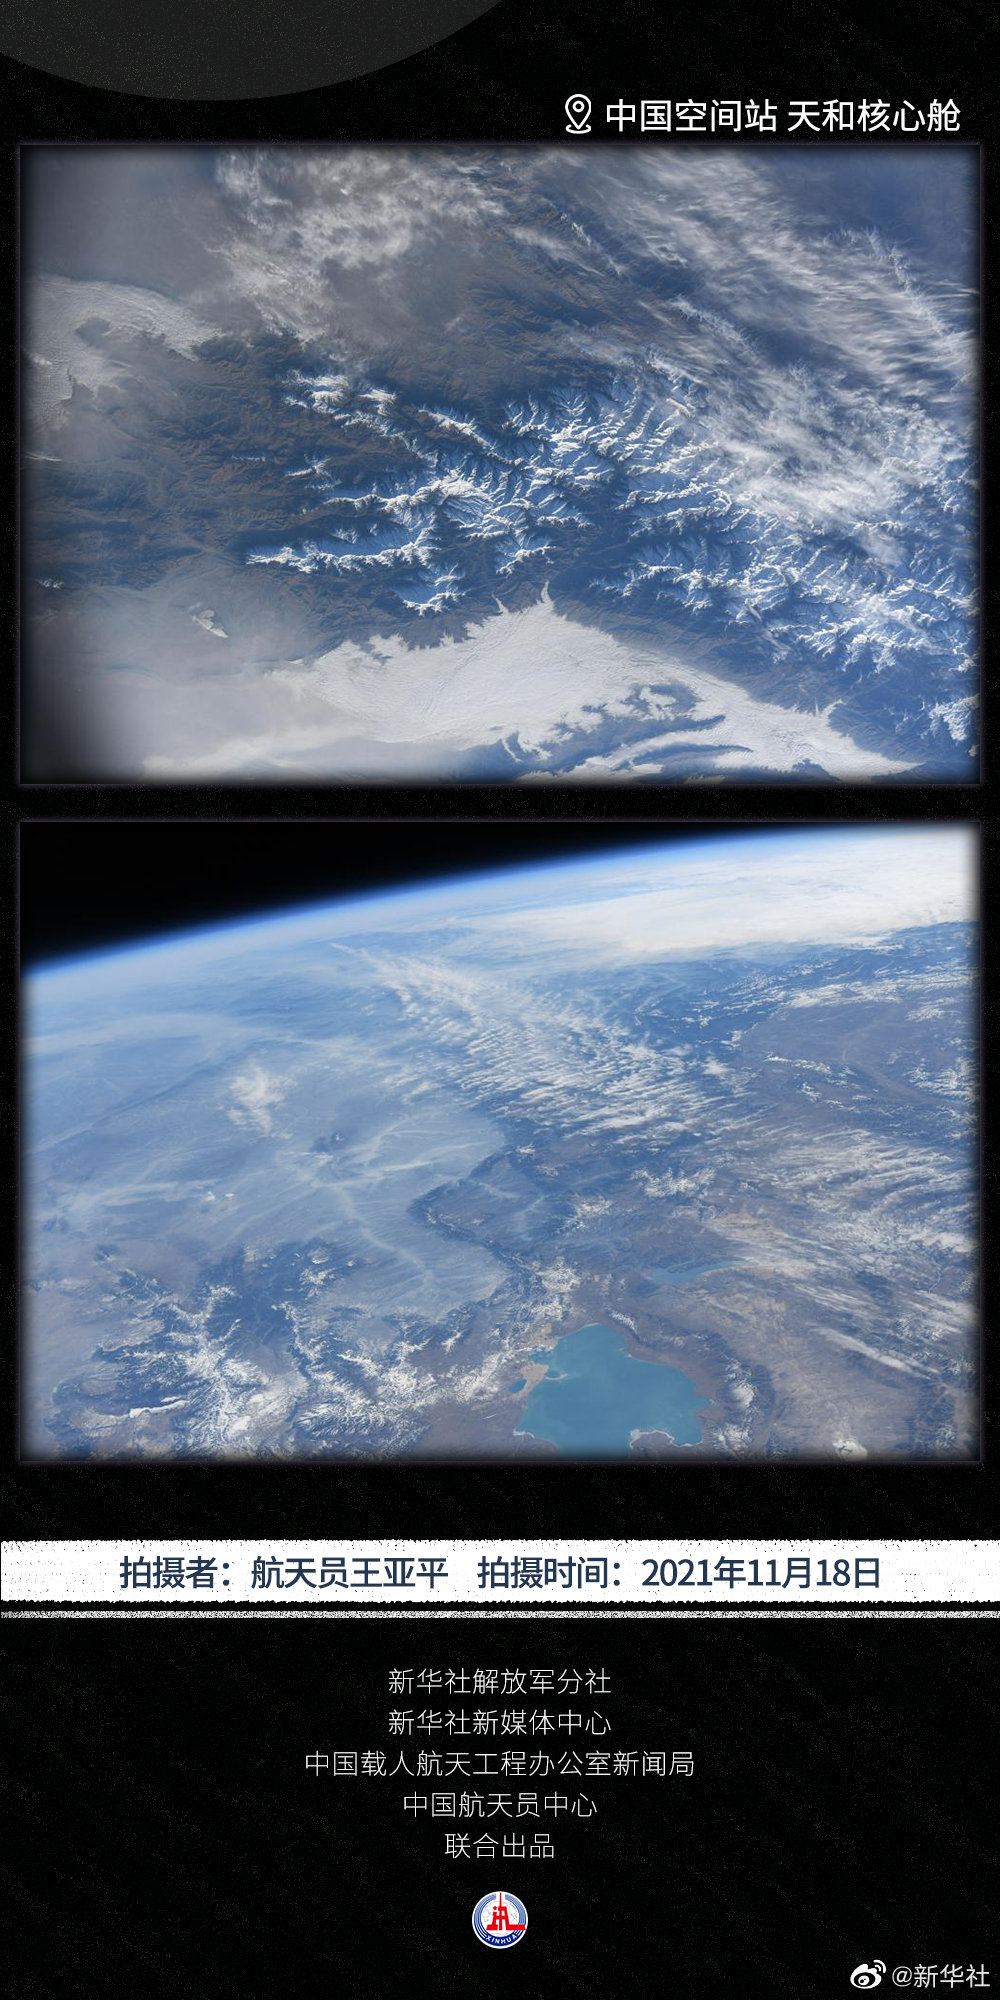 王亚平在空间站拍摄的地球首次曝光（彩蛋时间）